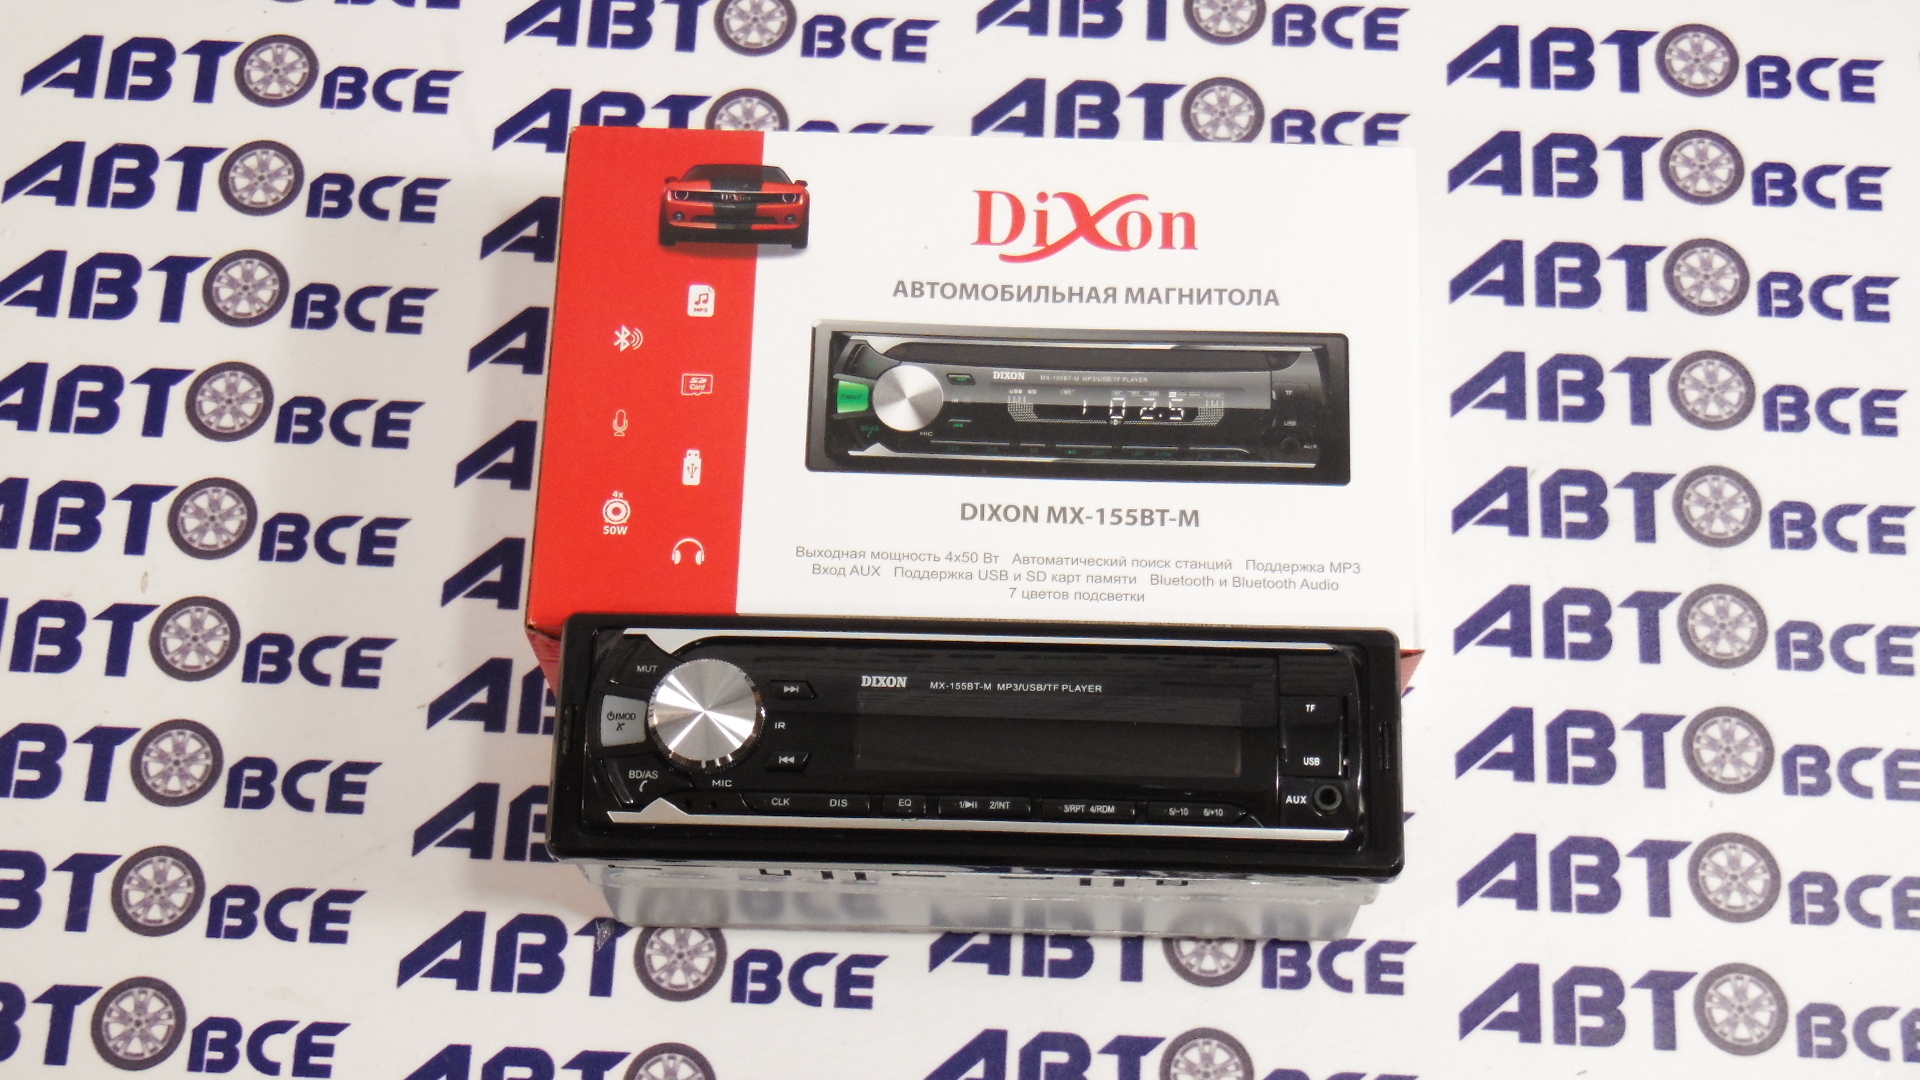 Автомагнитола MX-155BT-M DIXON